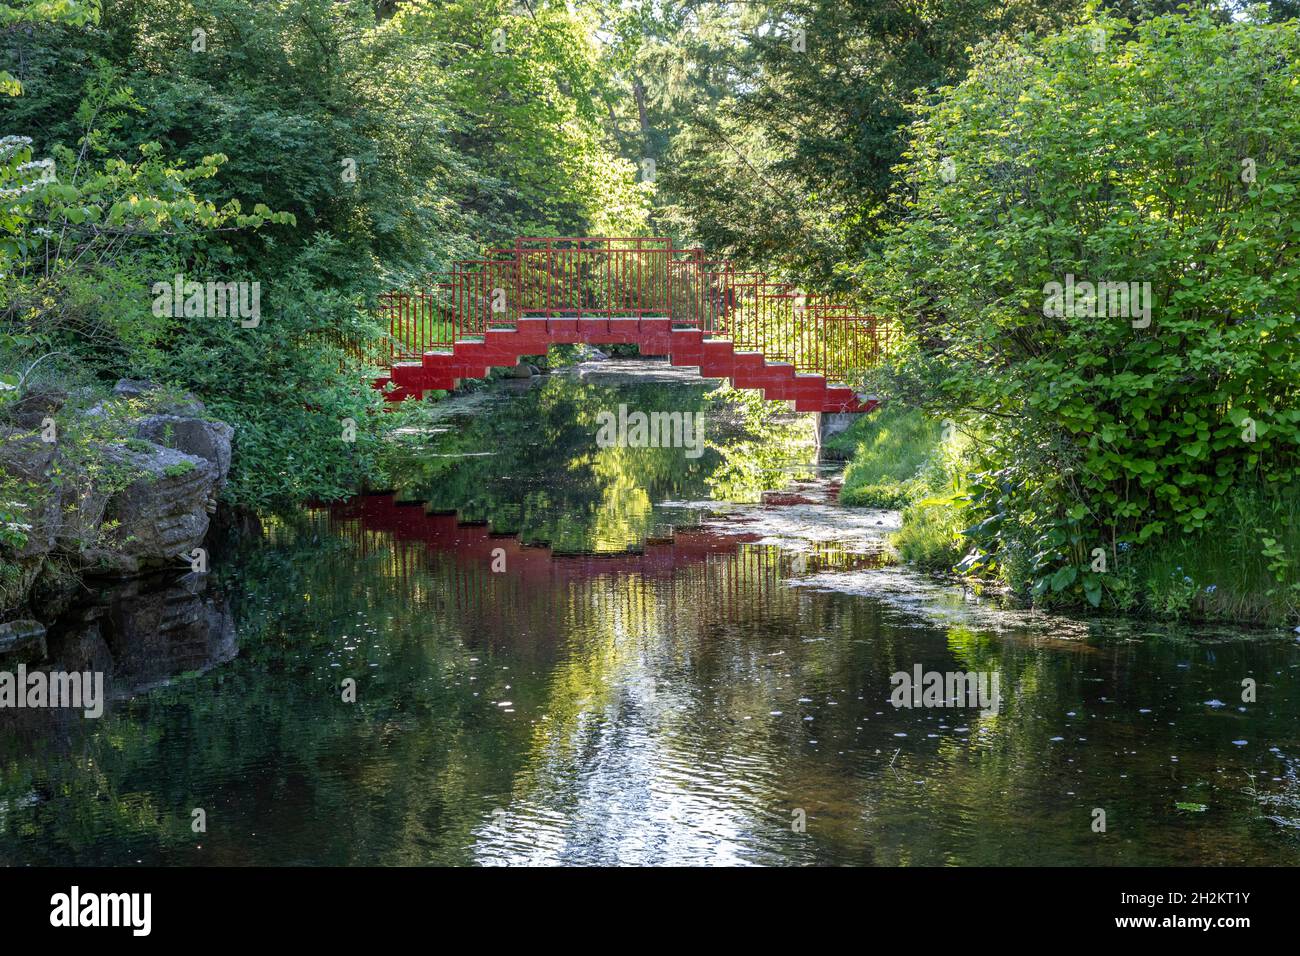 Midland, Michigan - die Rote Brücke in den Dow Gardens, ein 110 Hektar großer botanischer Garten. Heute ein beliebtes Touristenziel, war es ursprünglich die Heimat von Herbe Stockfoto